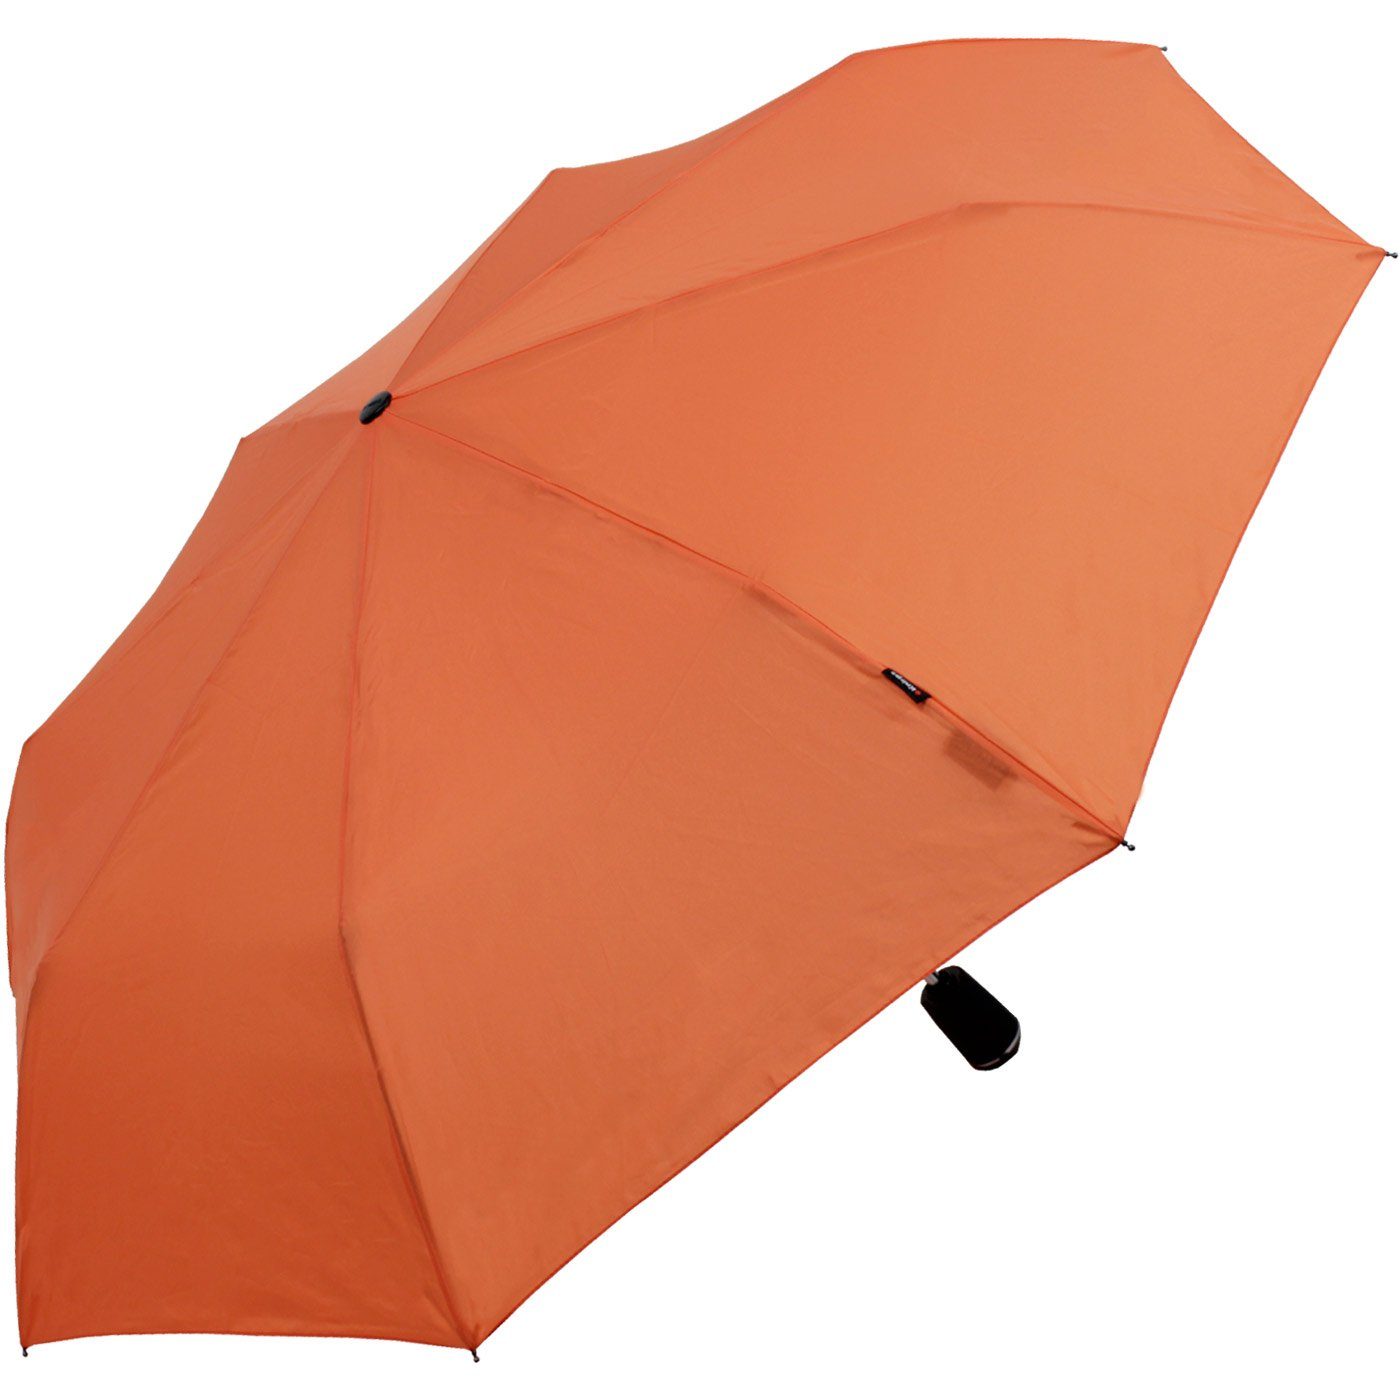 Duomatic Auf-Zu-Automatik, orange Taschenregenschirm Begleiter Knirps® der große, Large stabile mit